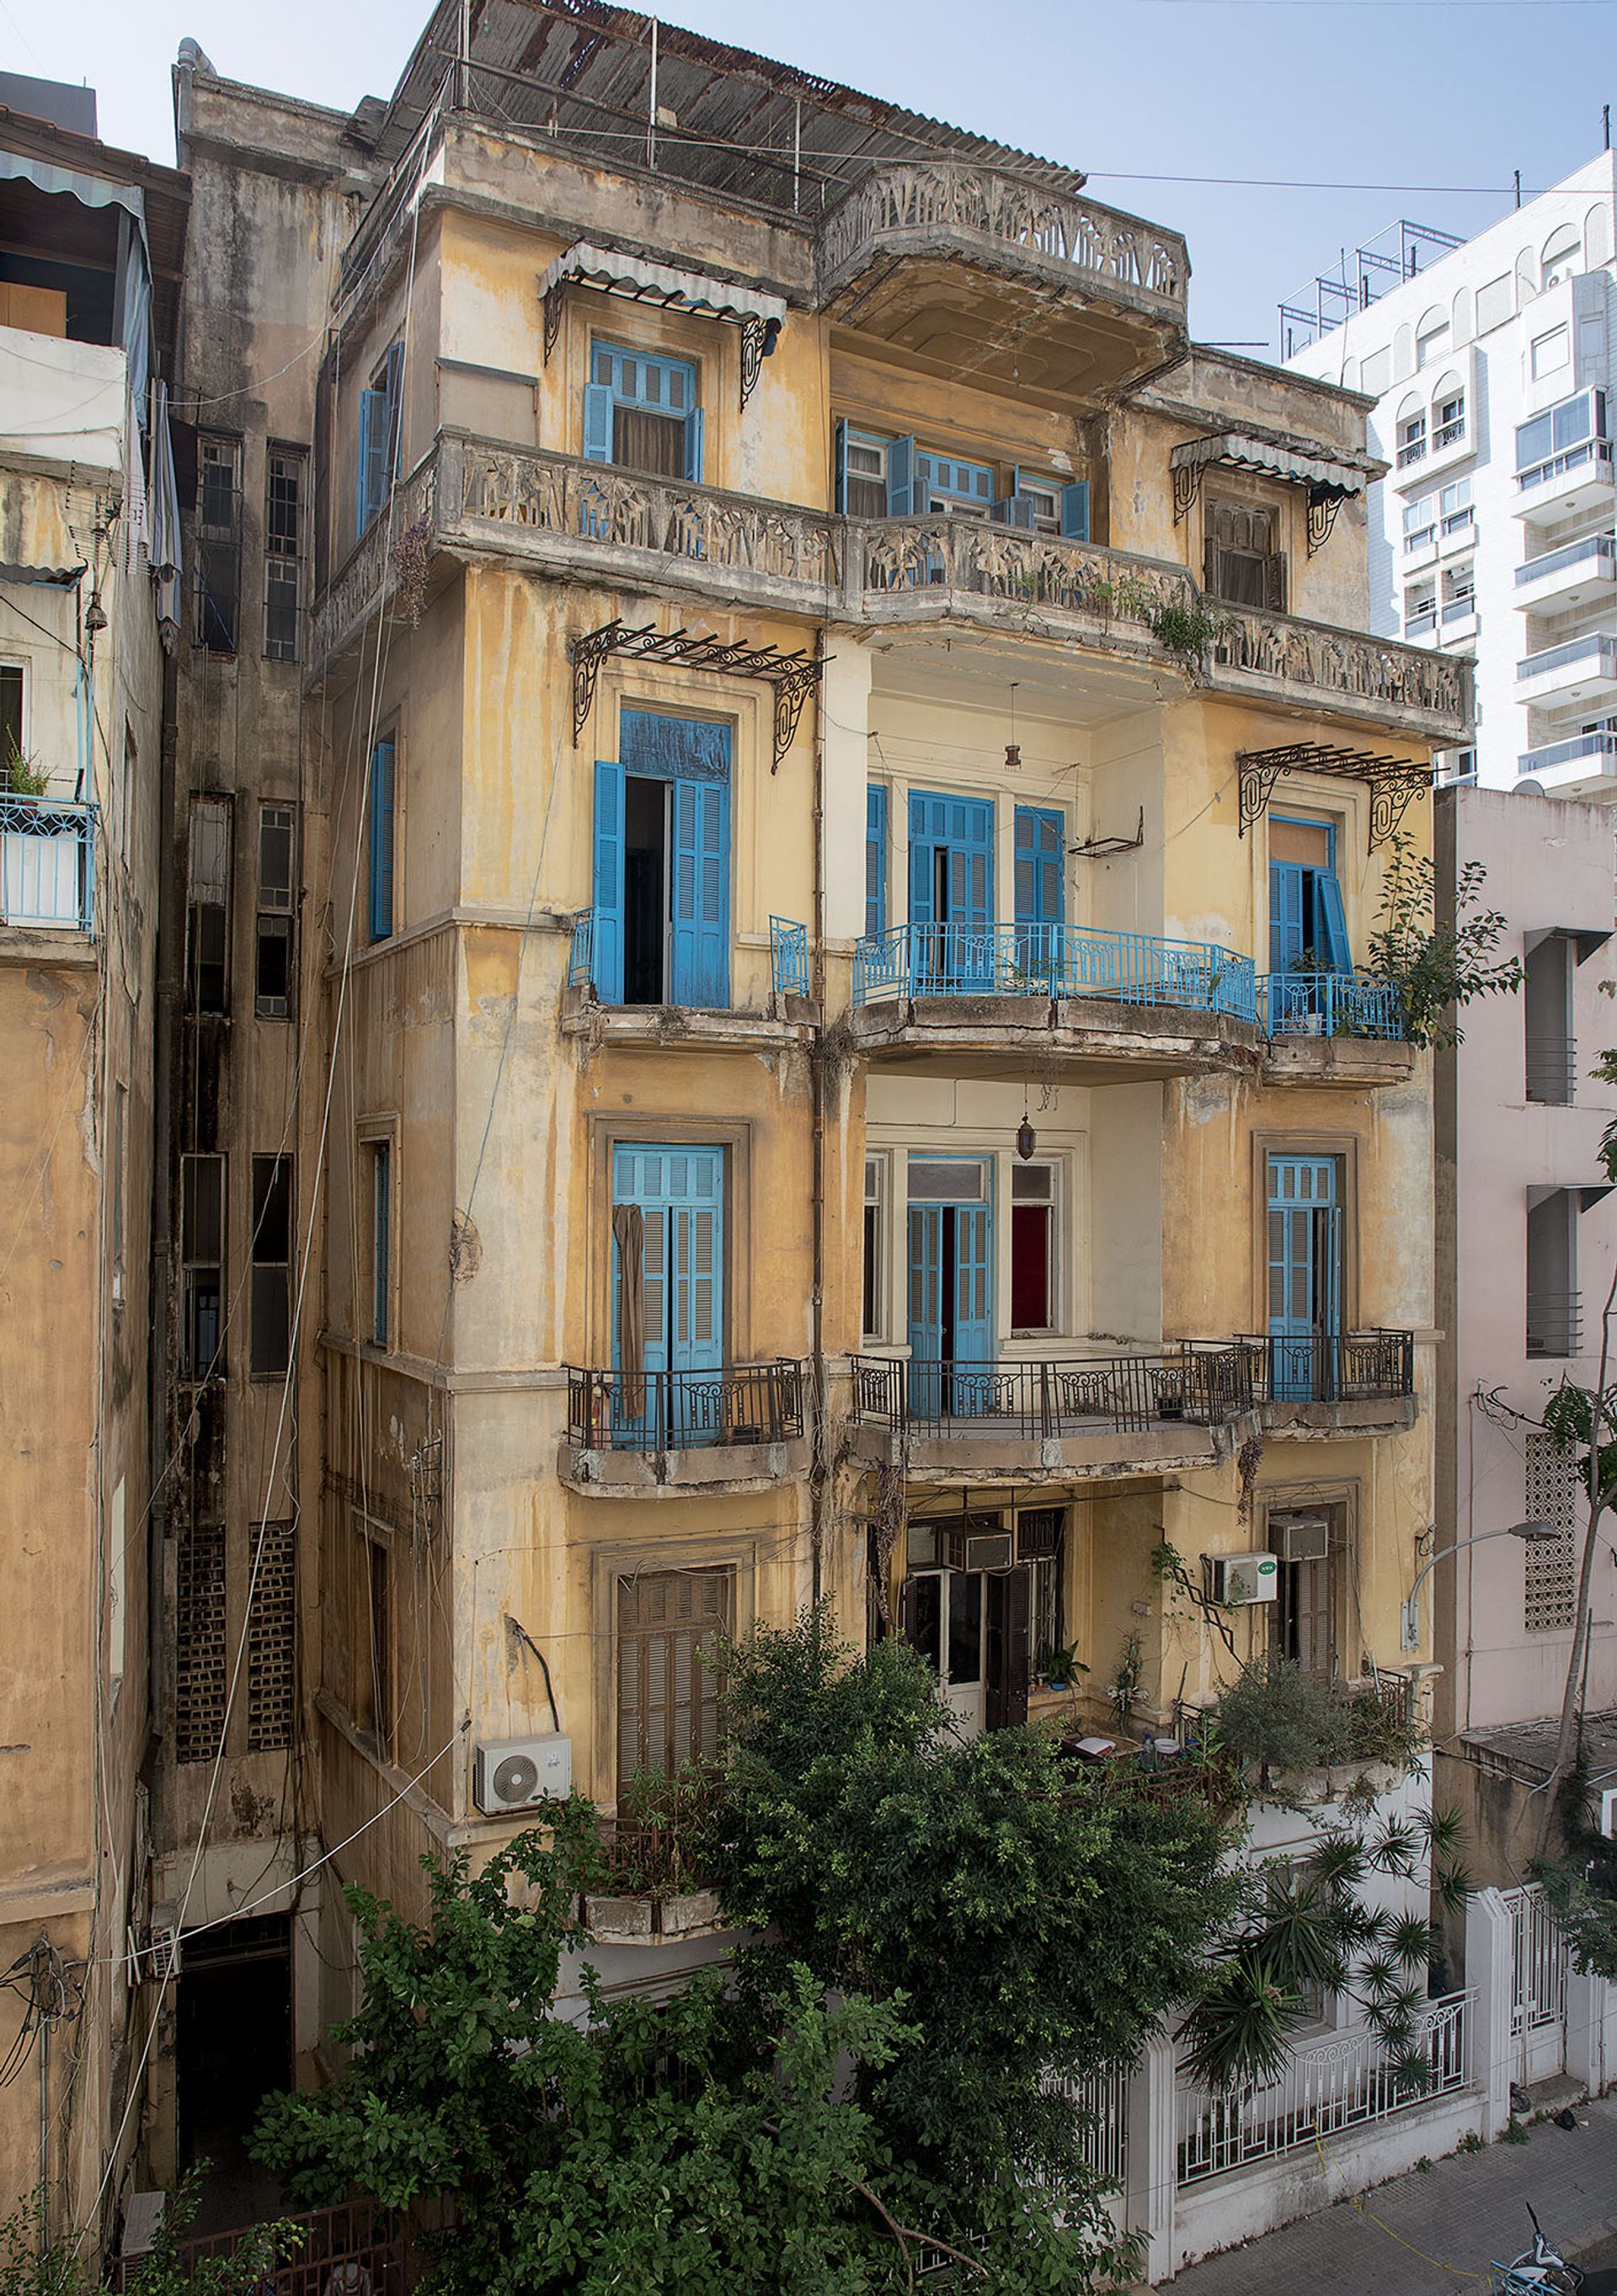 Mathieu Pernot, Beyrouth, 2020, photographie couleurs. © Mathieu Pernot